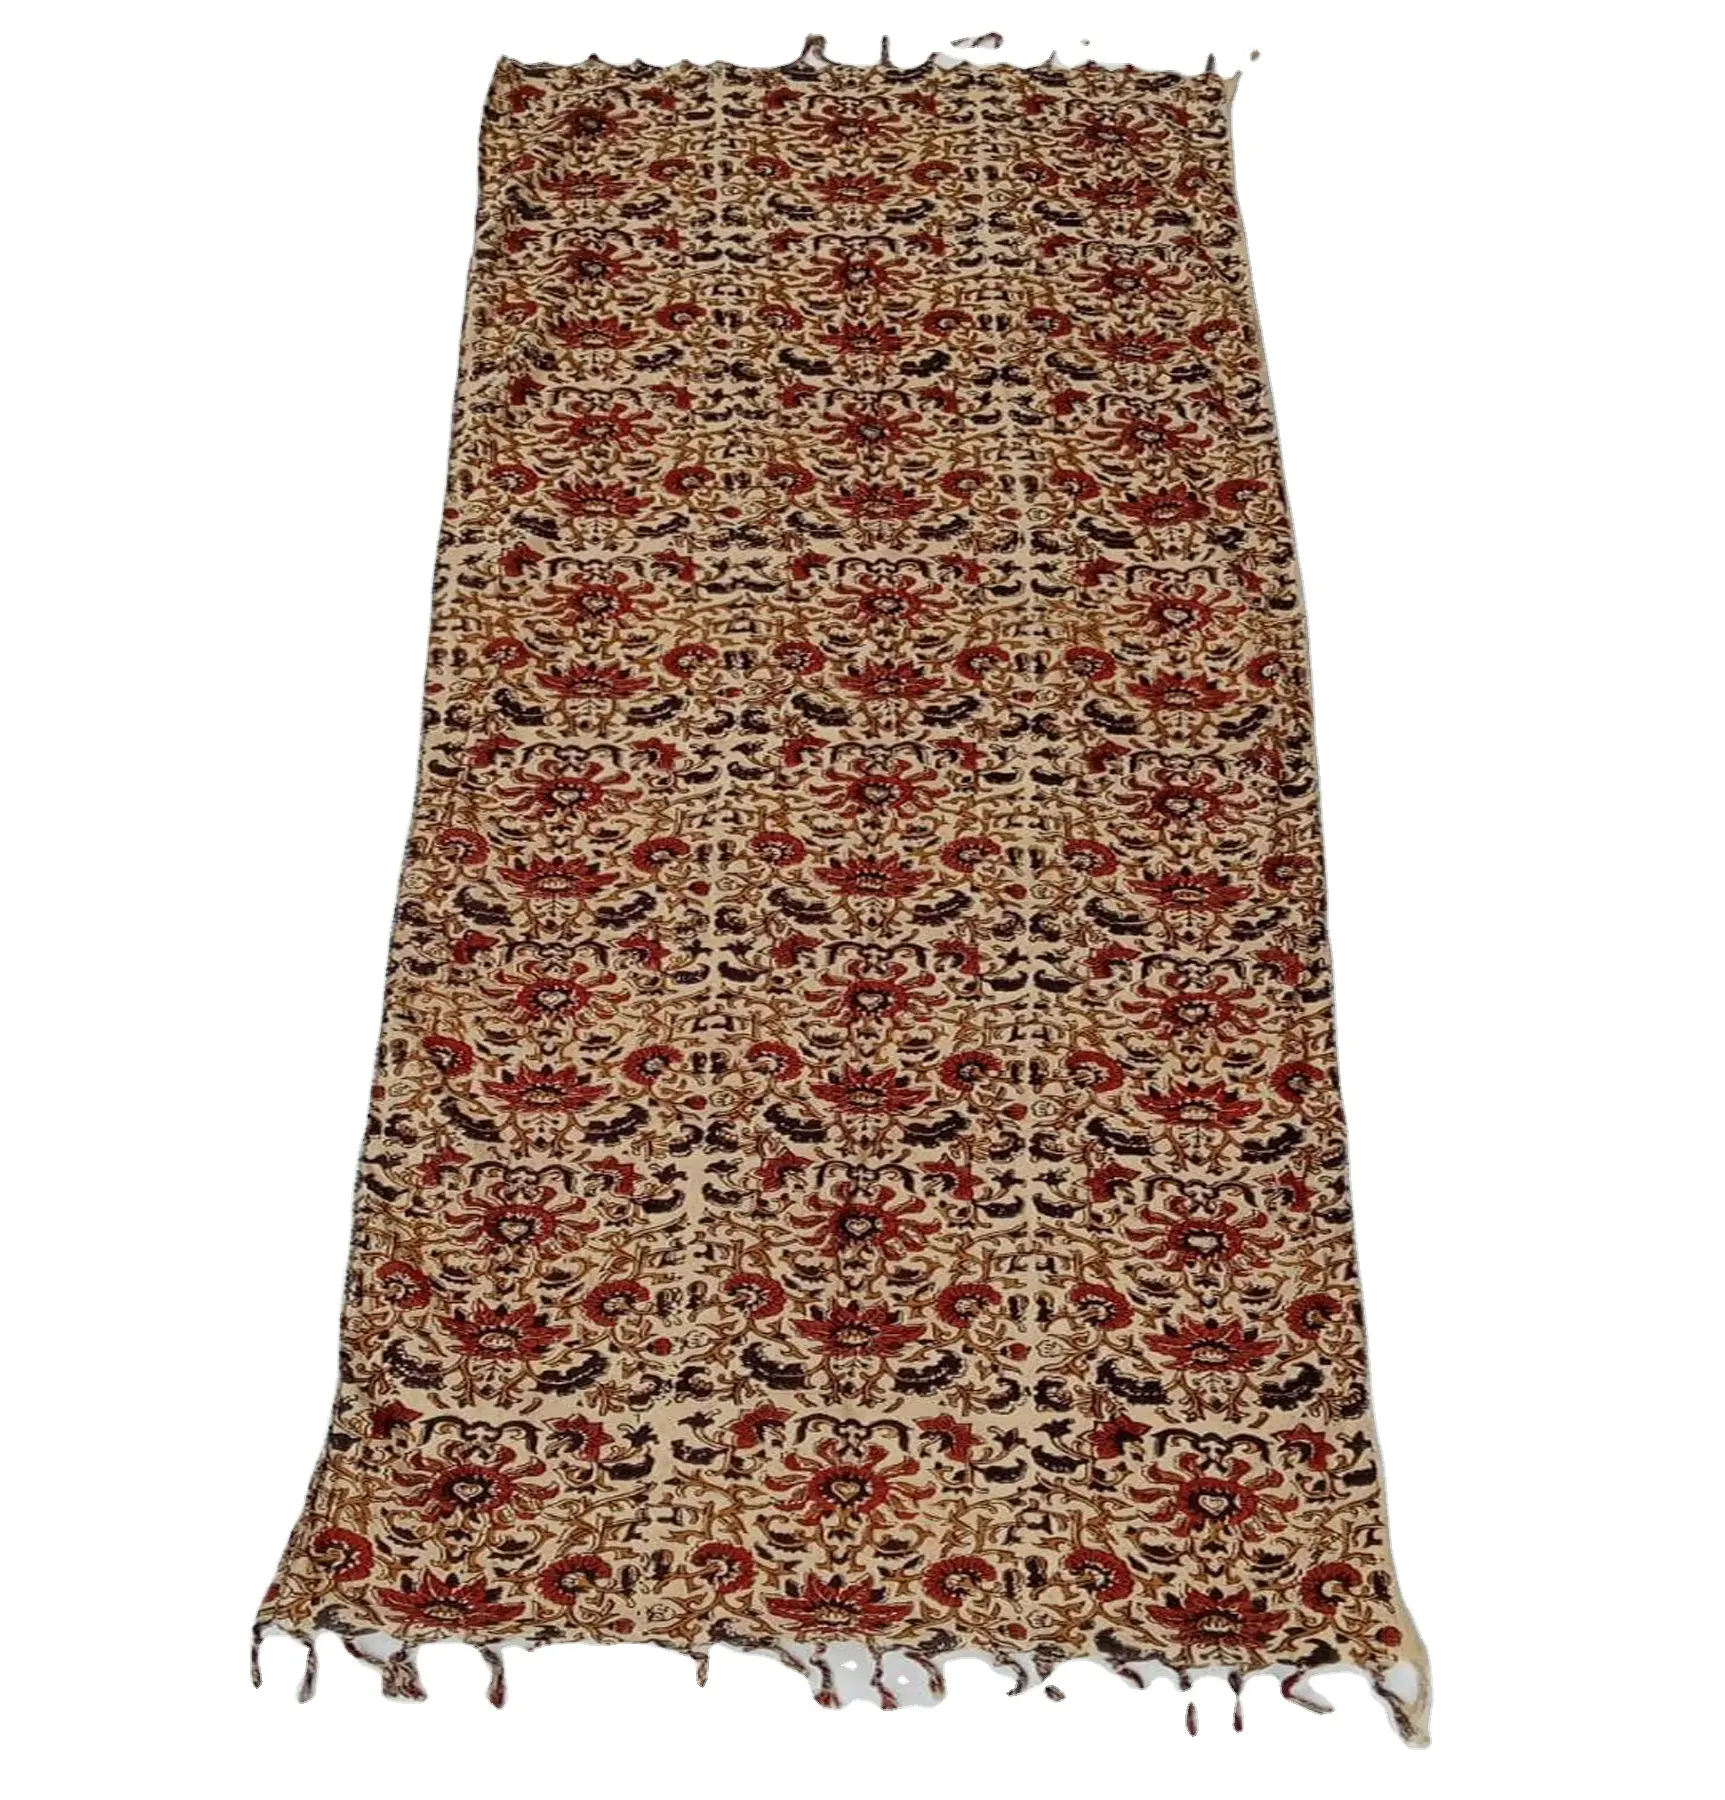 Lenço 100% algodão feminino, lenço árabe vermelho e branco com estampa digital, material versátil e macio, textura